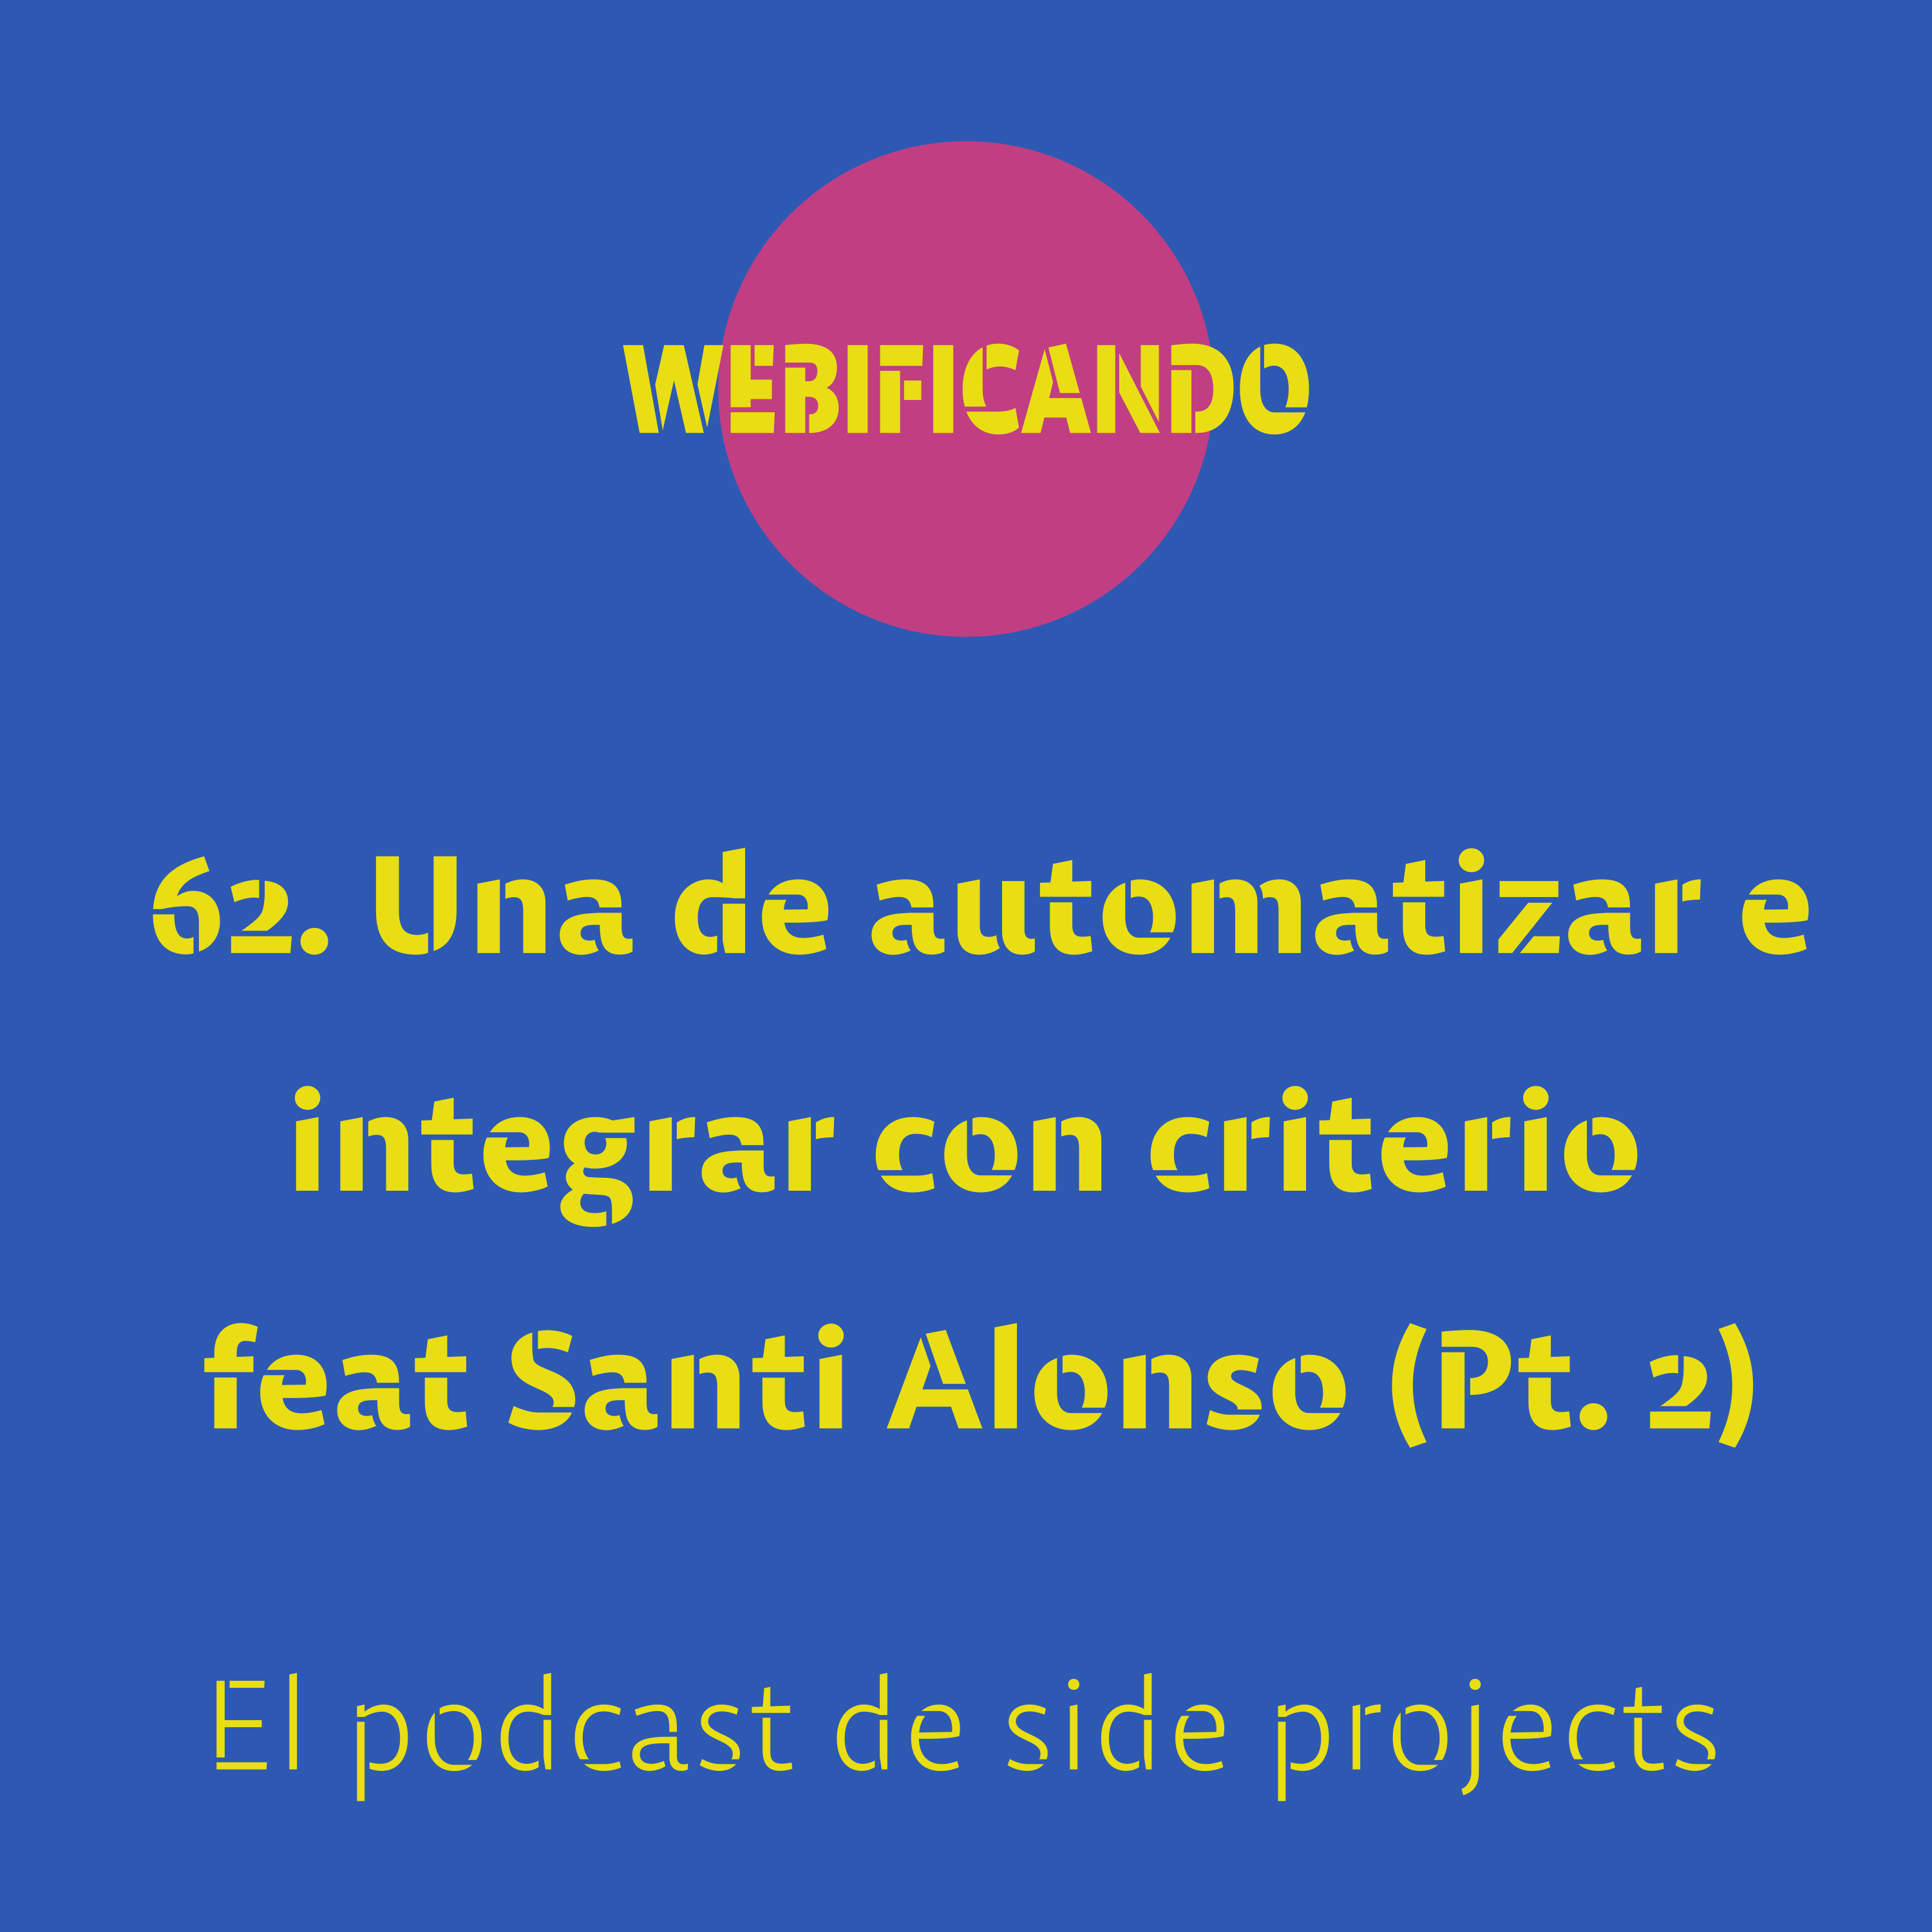 62. Otra de automatizar e integrar con criterio feat Santi Alonso (parte 2)